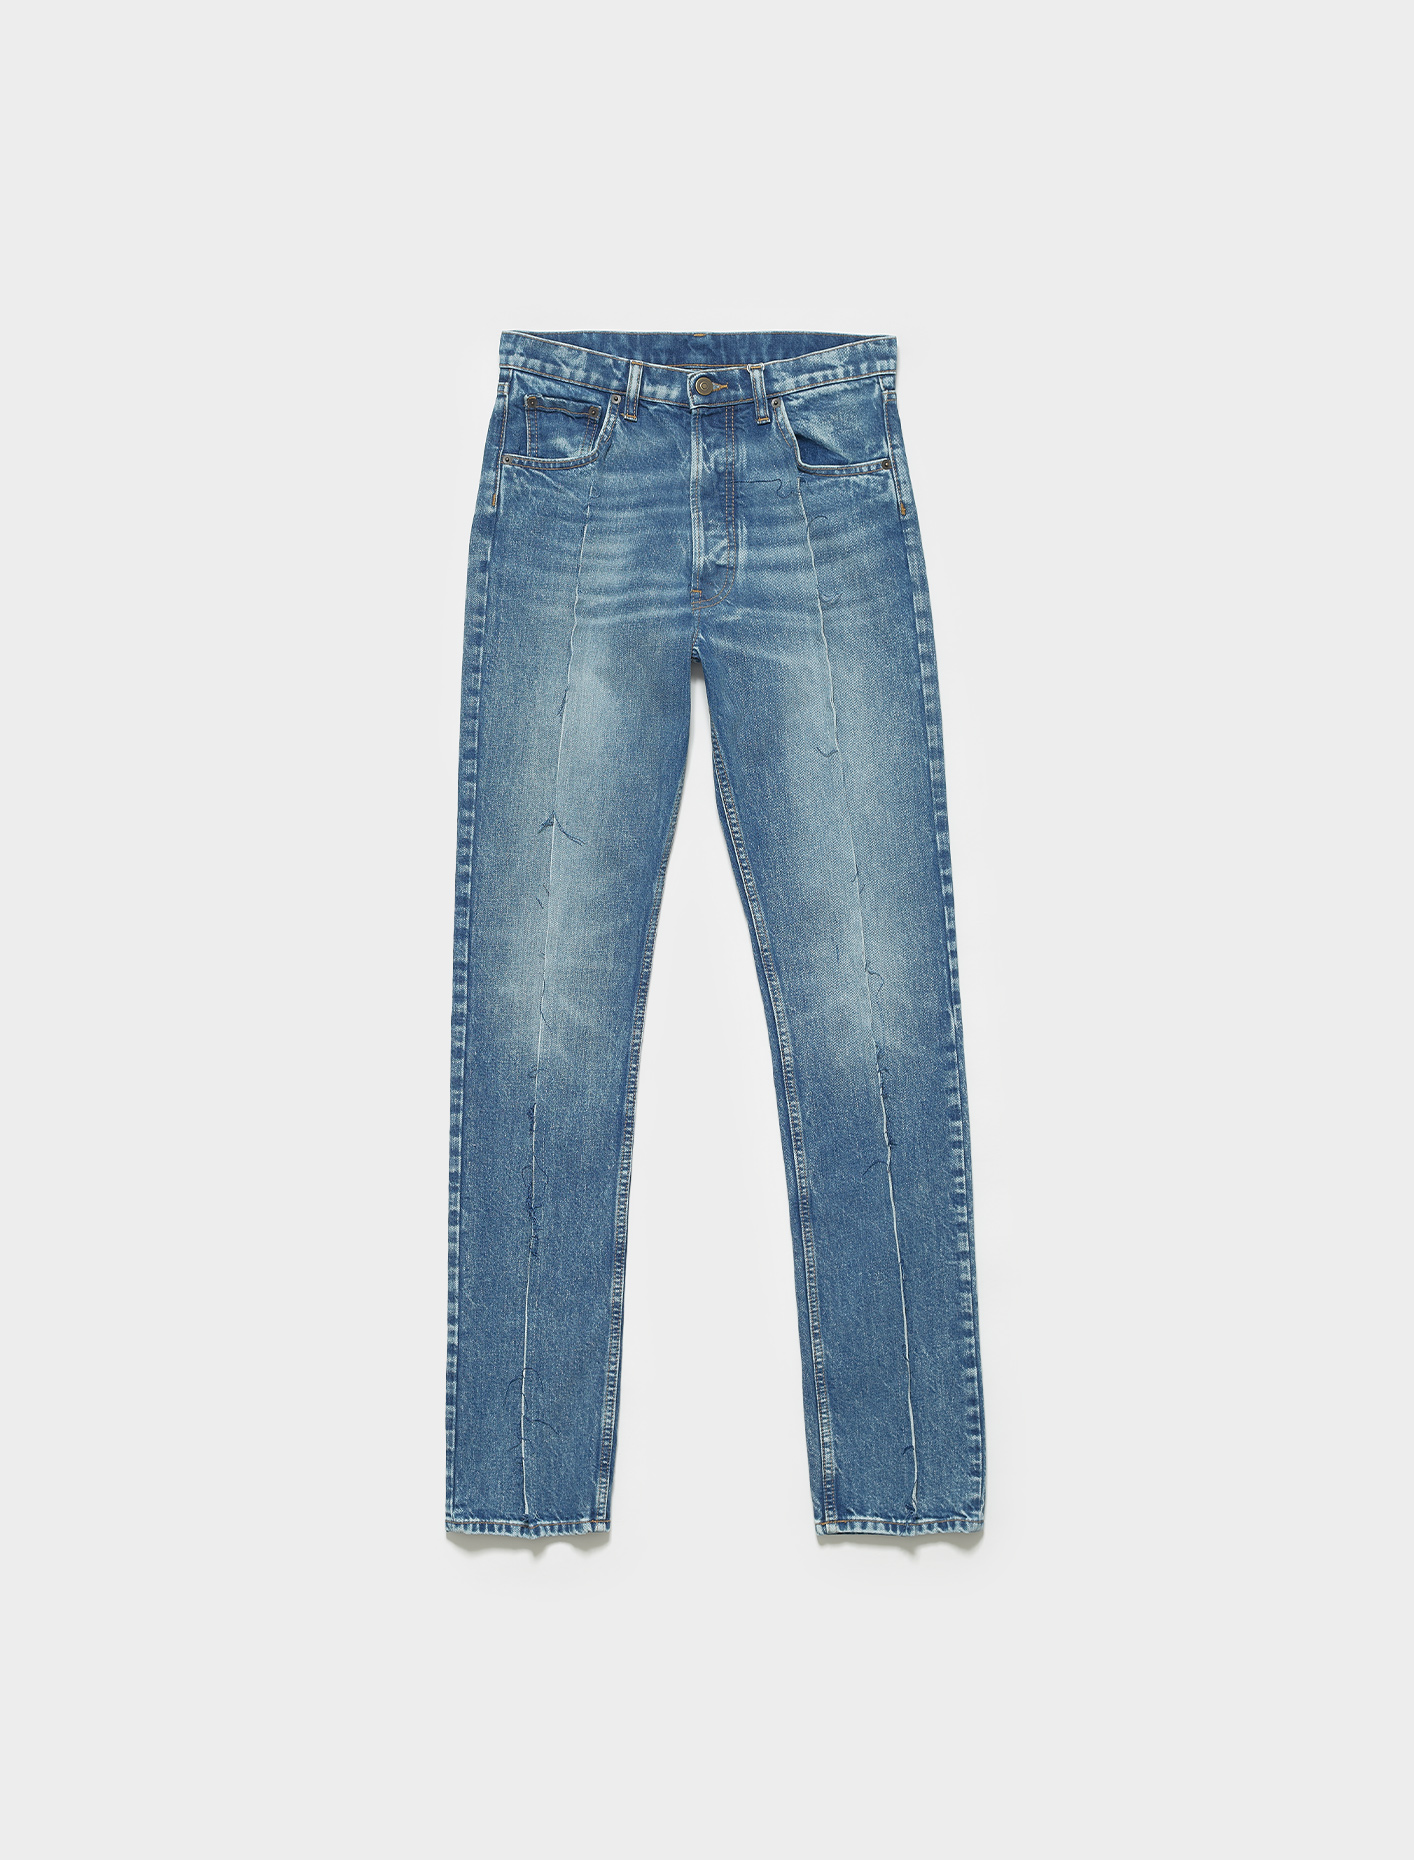 Maison Margiela Jeans in Blue Denim | Voo Store Berlin | Worldwide Shipping